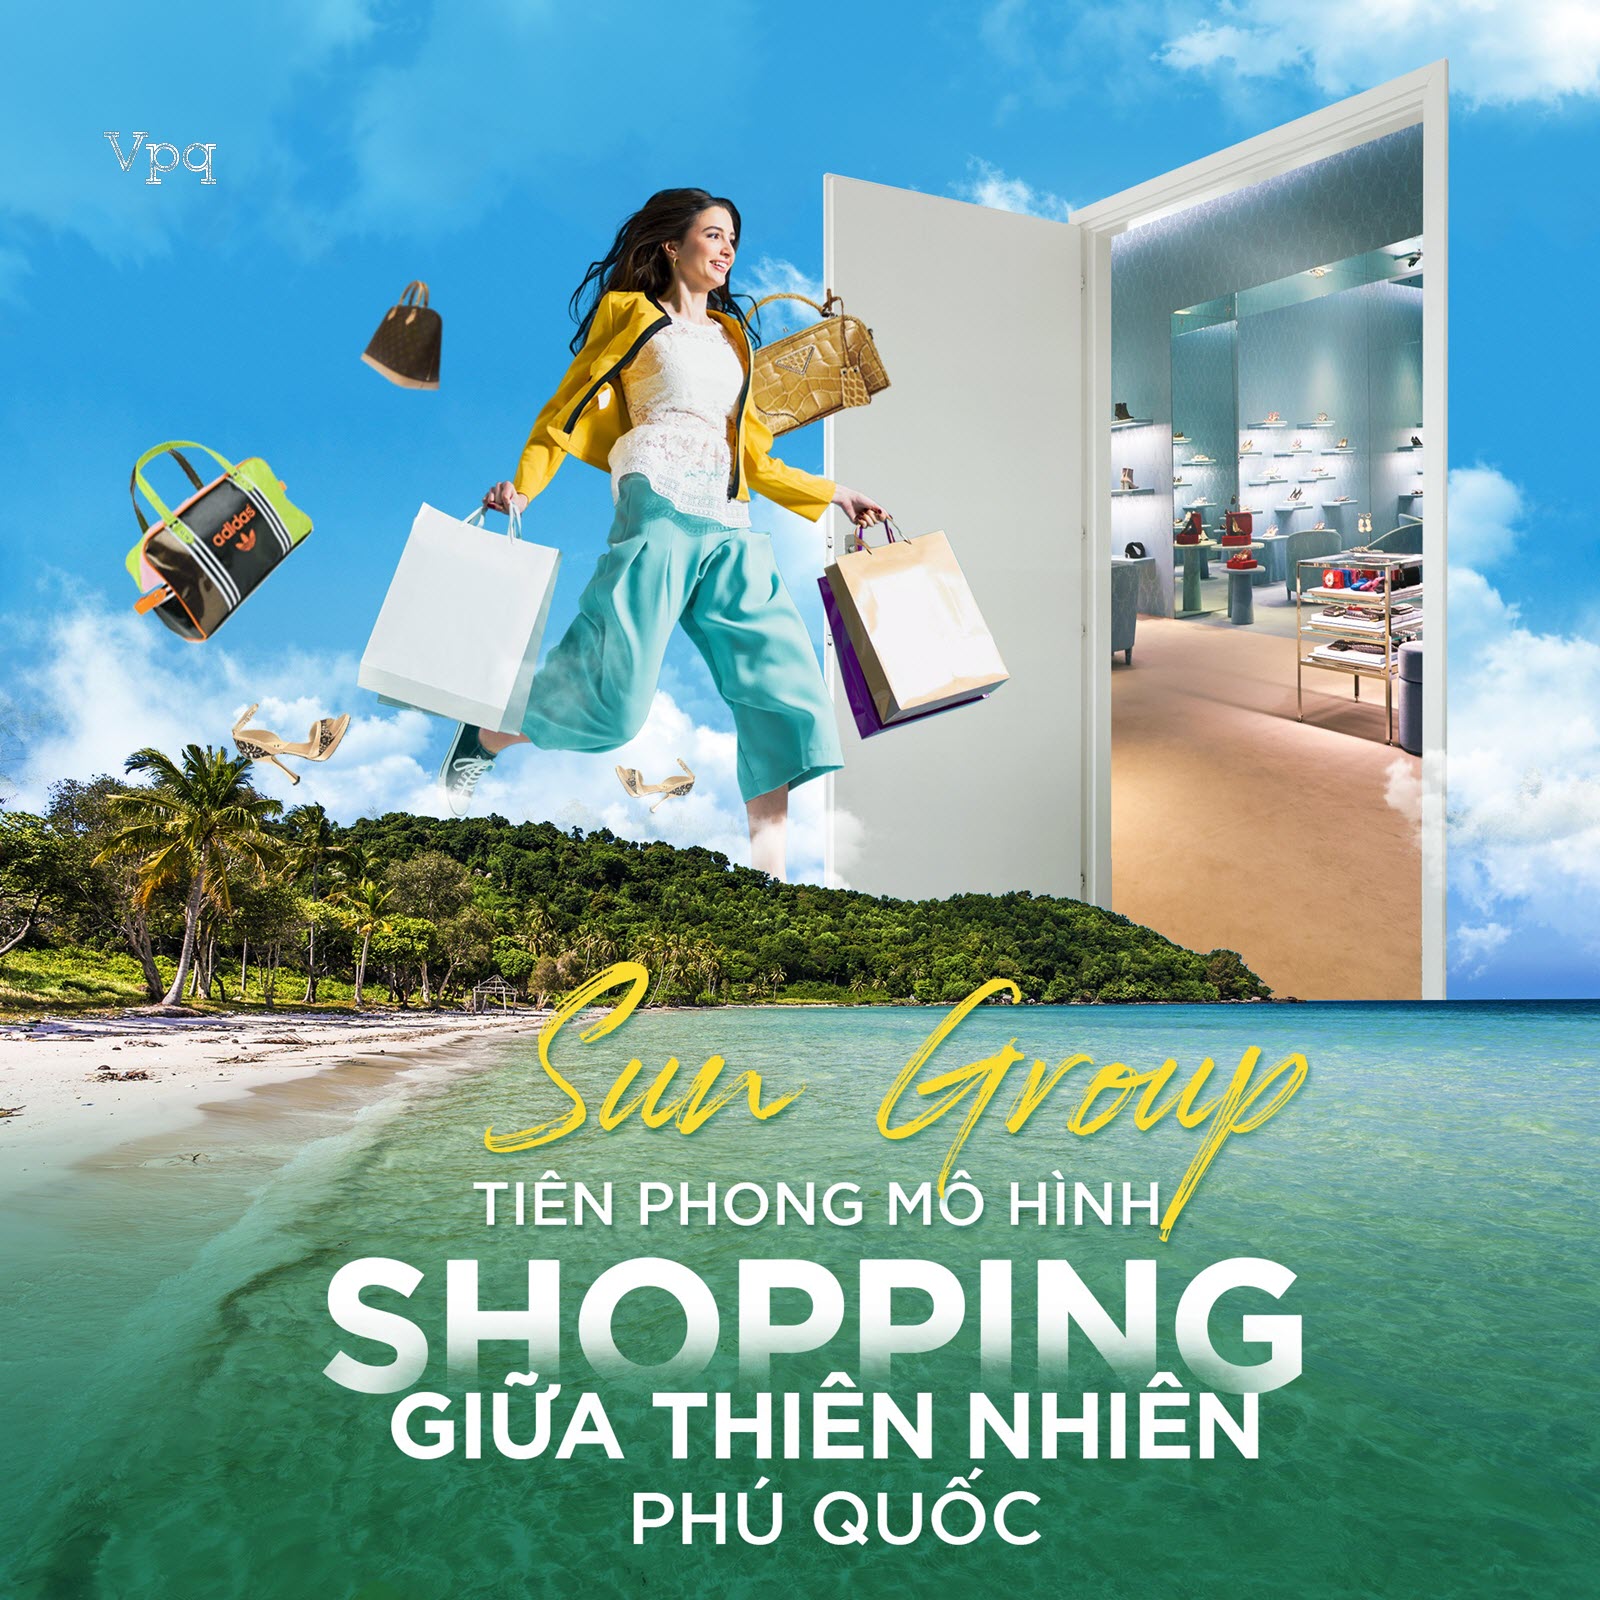 Sun Group tiên phong mô hình shopping giữa thiên nhiên Phú Quốc